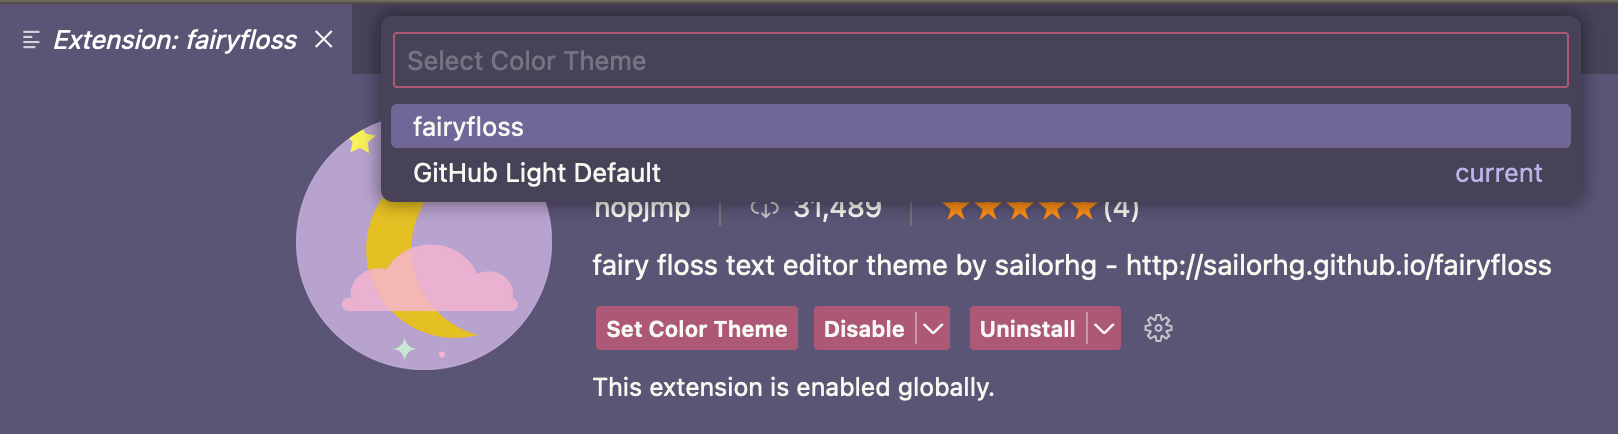 Captura de pantalla de la lista desplegable "Seleccionar tema de color", con el tema "fairyfloss" seleccionado.